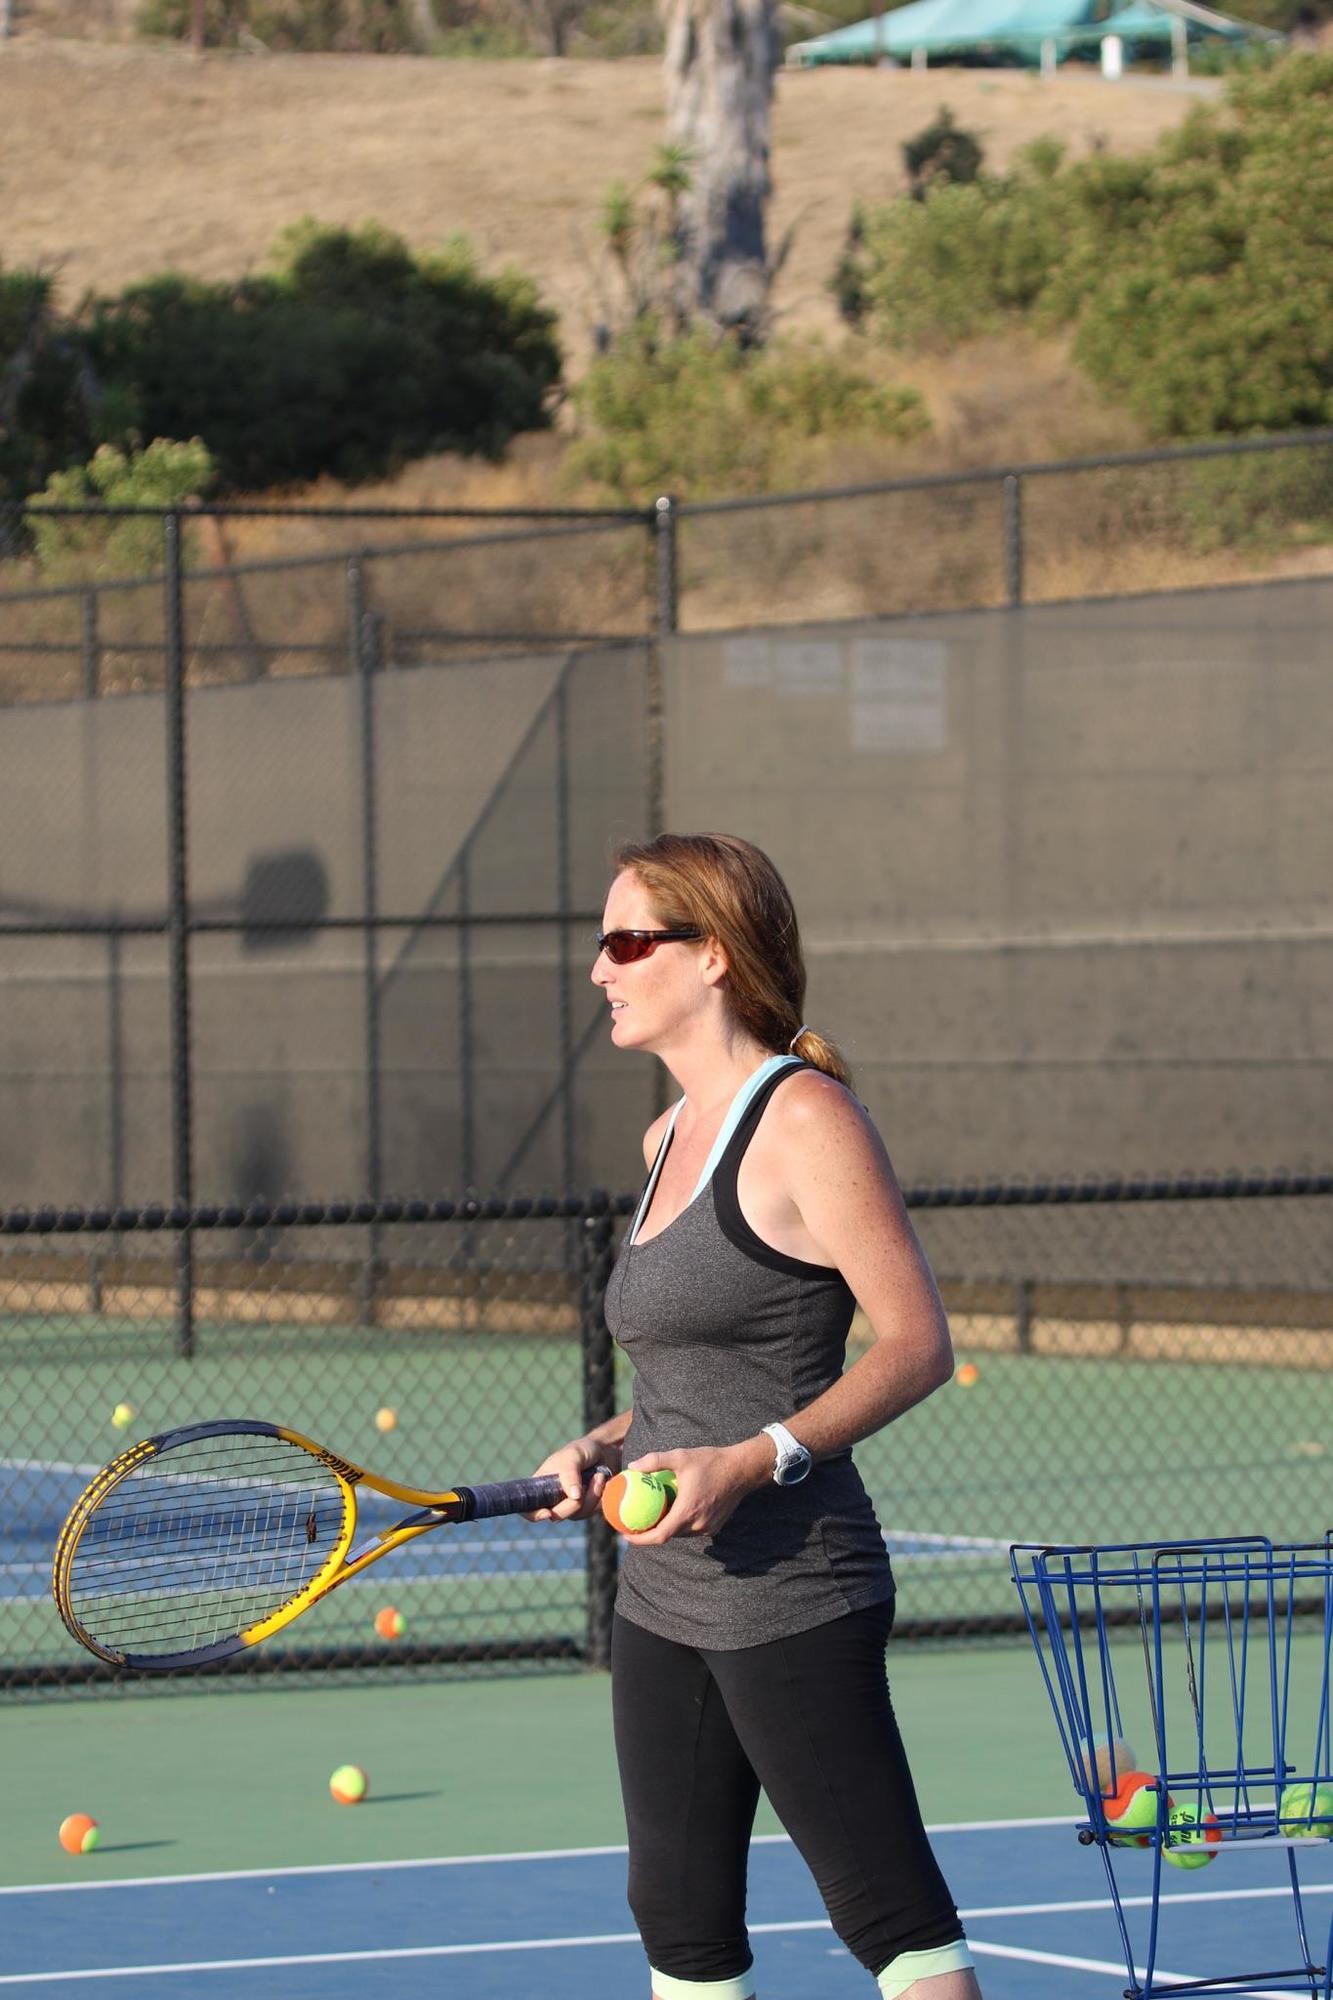 Margarita teaches tennis lessons in Irvine, CA